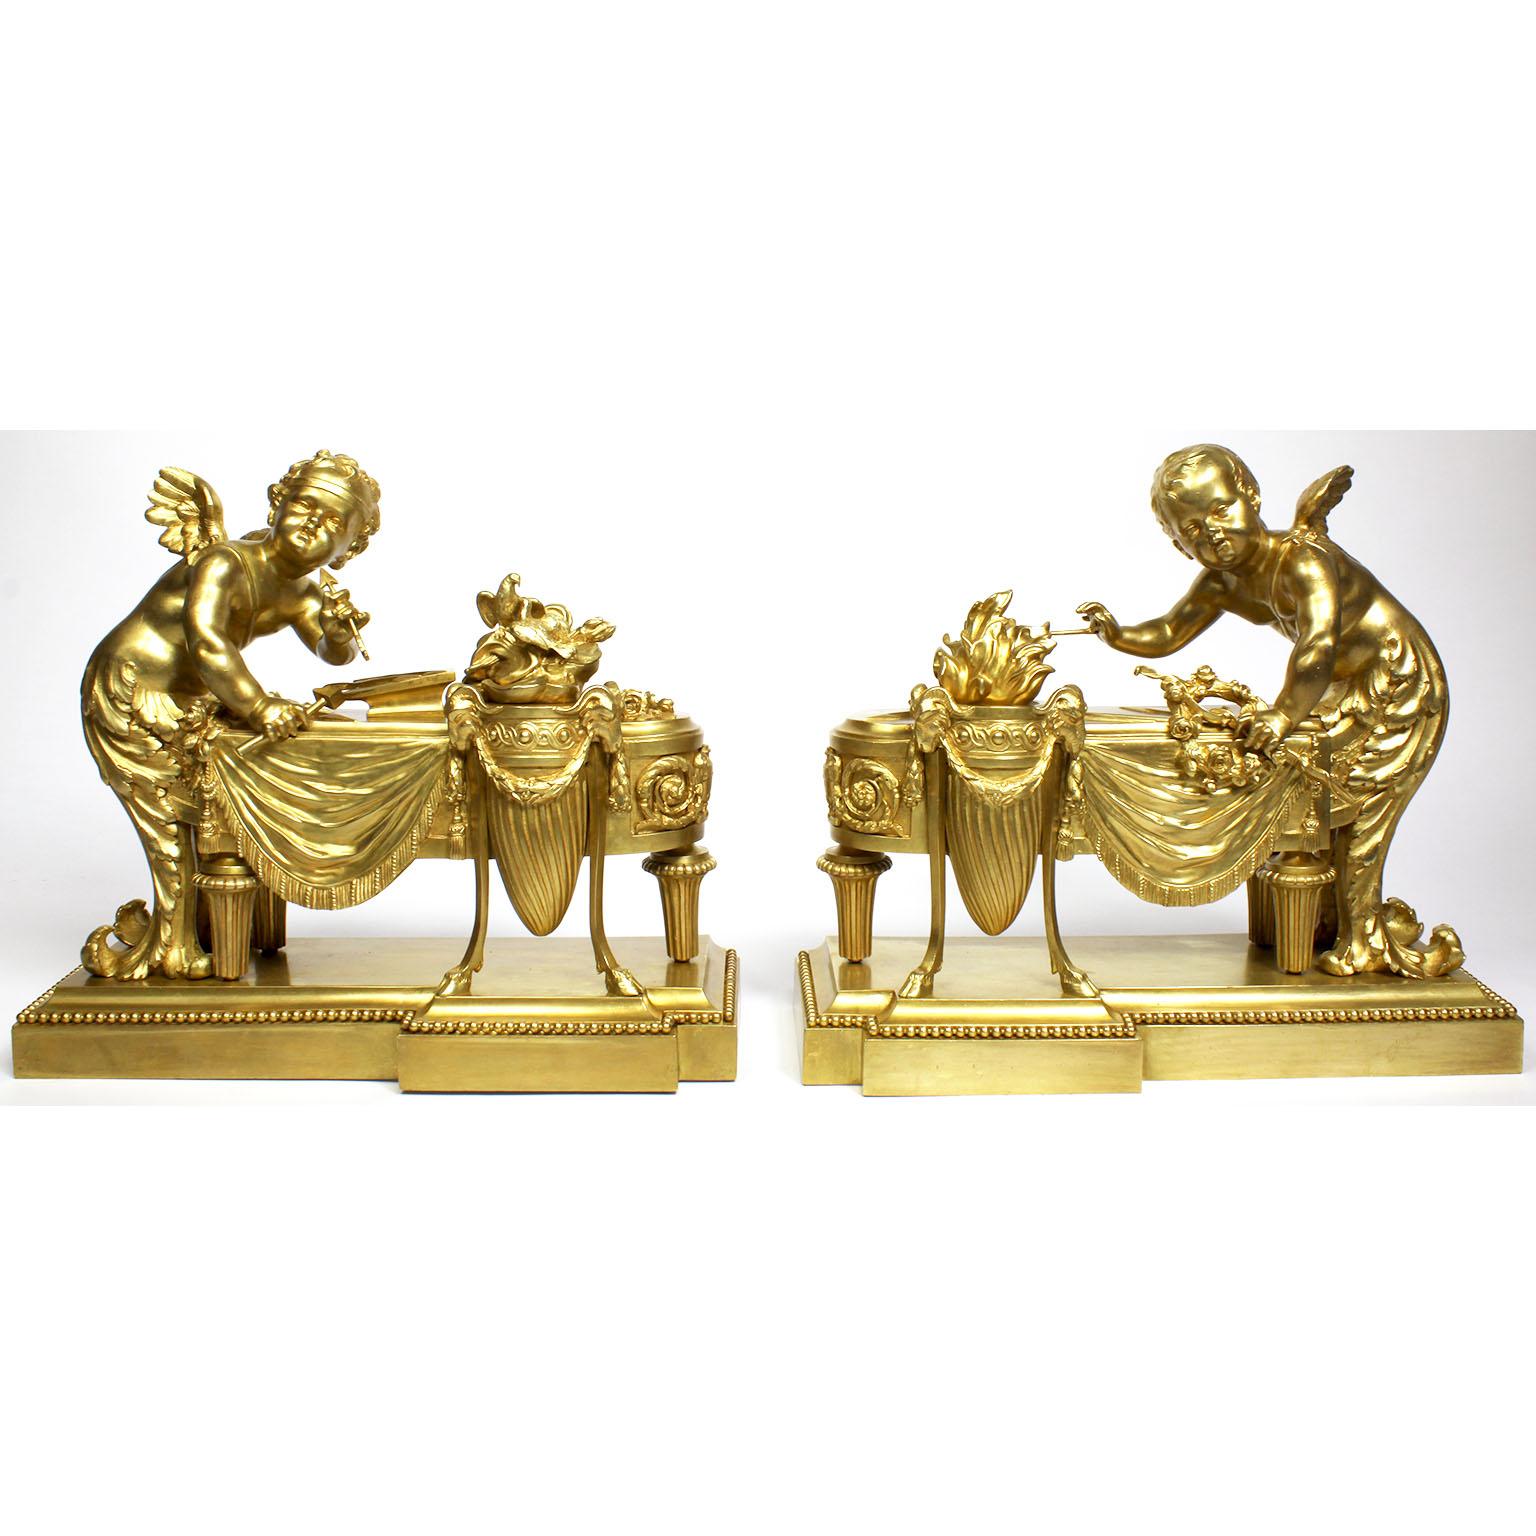 Ein sehr feines und charmantes Paar französischer figuraler vergoldeter Bronze-Chenets im Stil der Belle Époque des 19. und 20. Jahrhunderts. Die fein ziselierten, skurrilen Ormolu-Andirons, jeweils bekrönt von einer Figur eines stehenden Amors oder